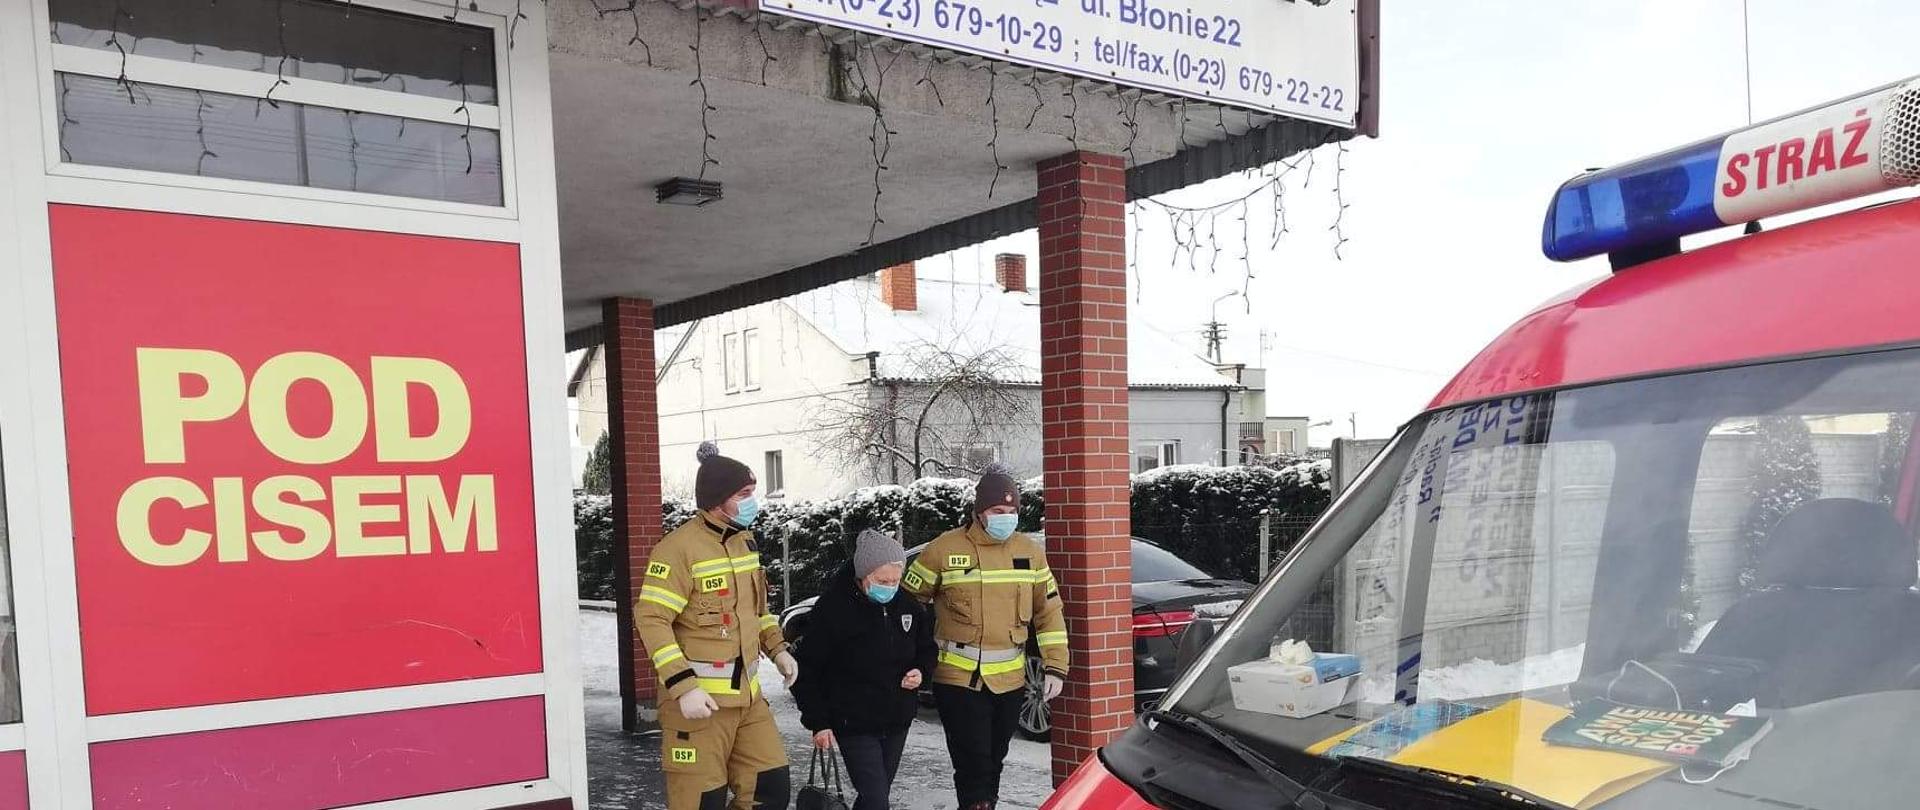 Dwóch strażaków ochotniczej straży pożarnej, ubranych w żółte stroje specjalne w maseczkach wychodzących z budynku przychodni prowadzi do czerwonego samochodu stojącego przed budynkiem starszą kobietę.